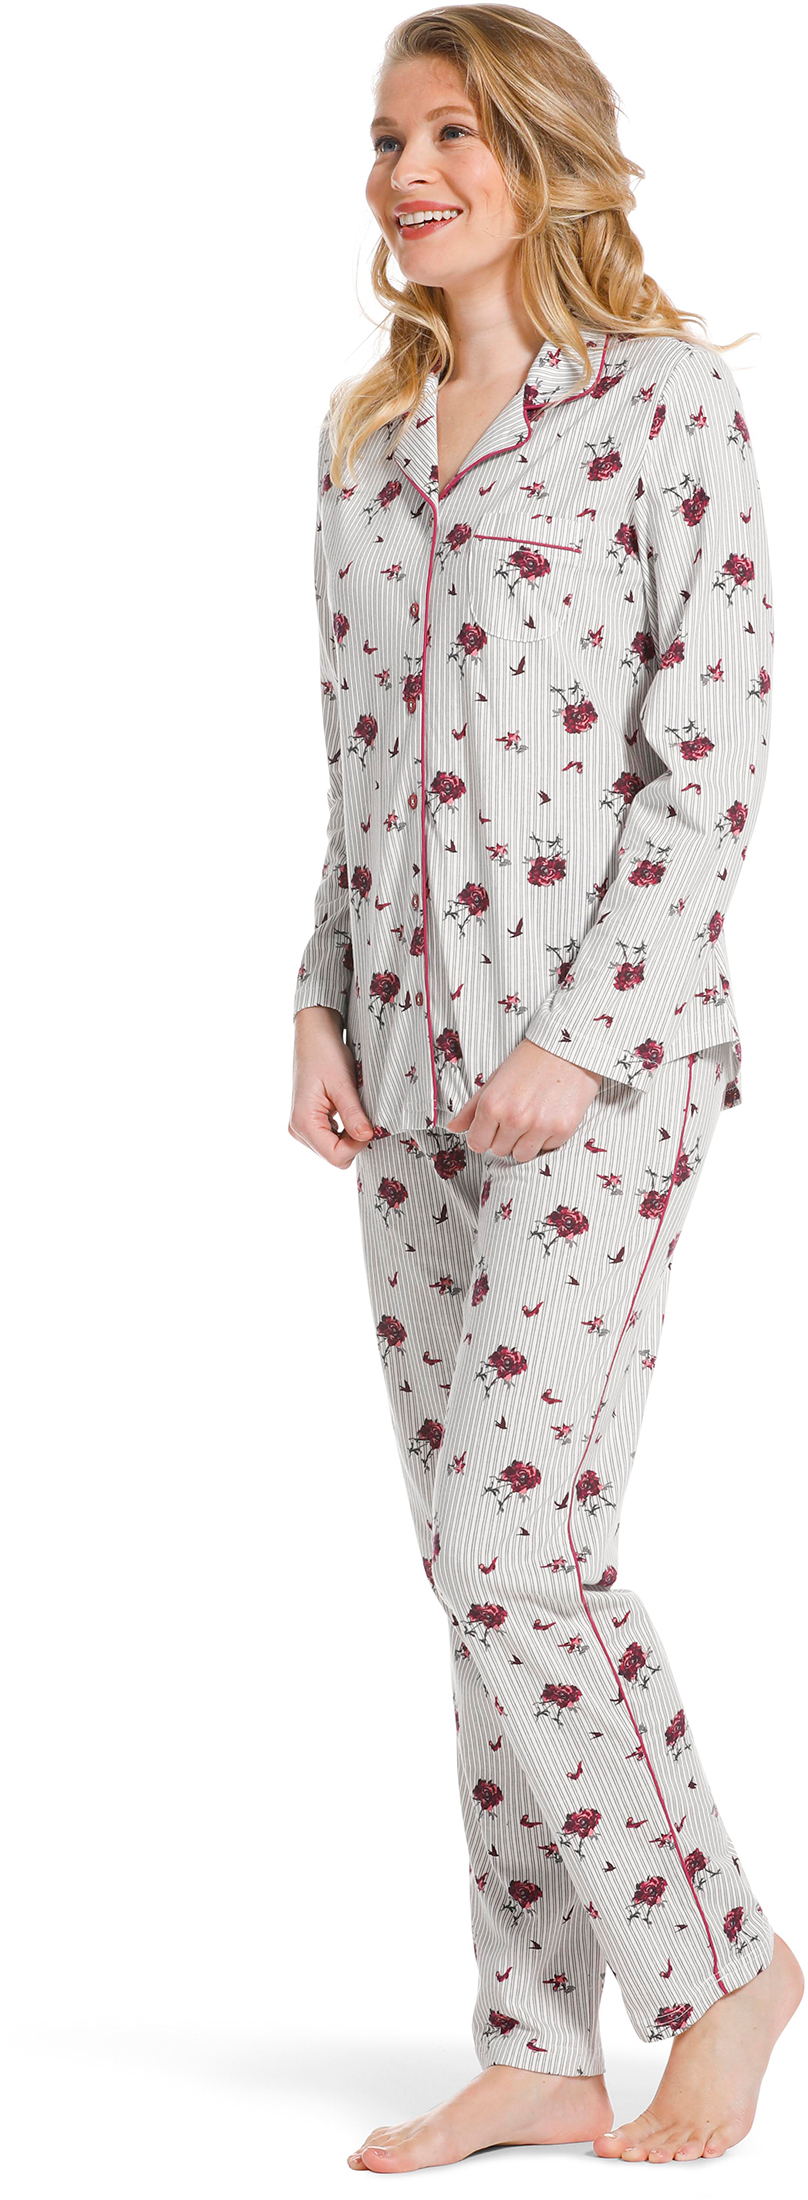 Pastunette doorknoop dames pyjama 20222-156-6 - Grijs - 48